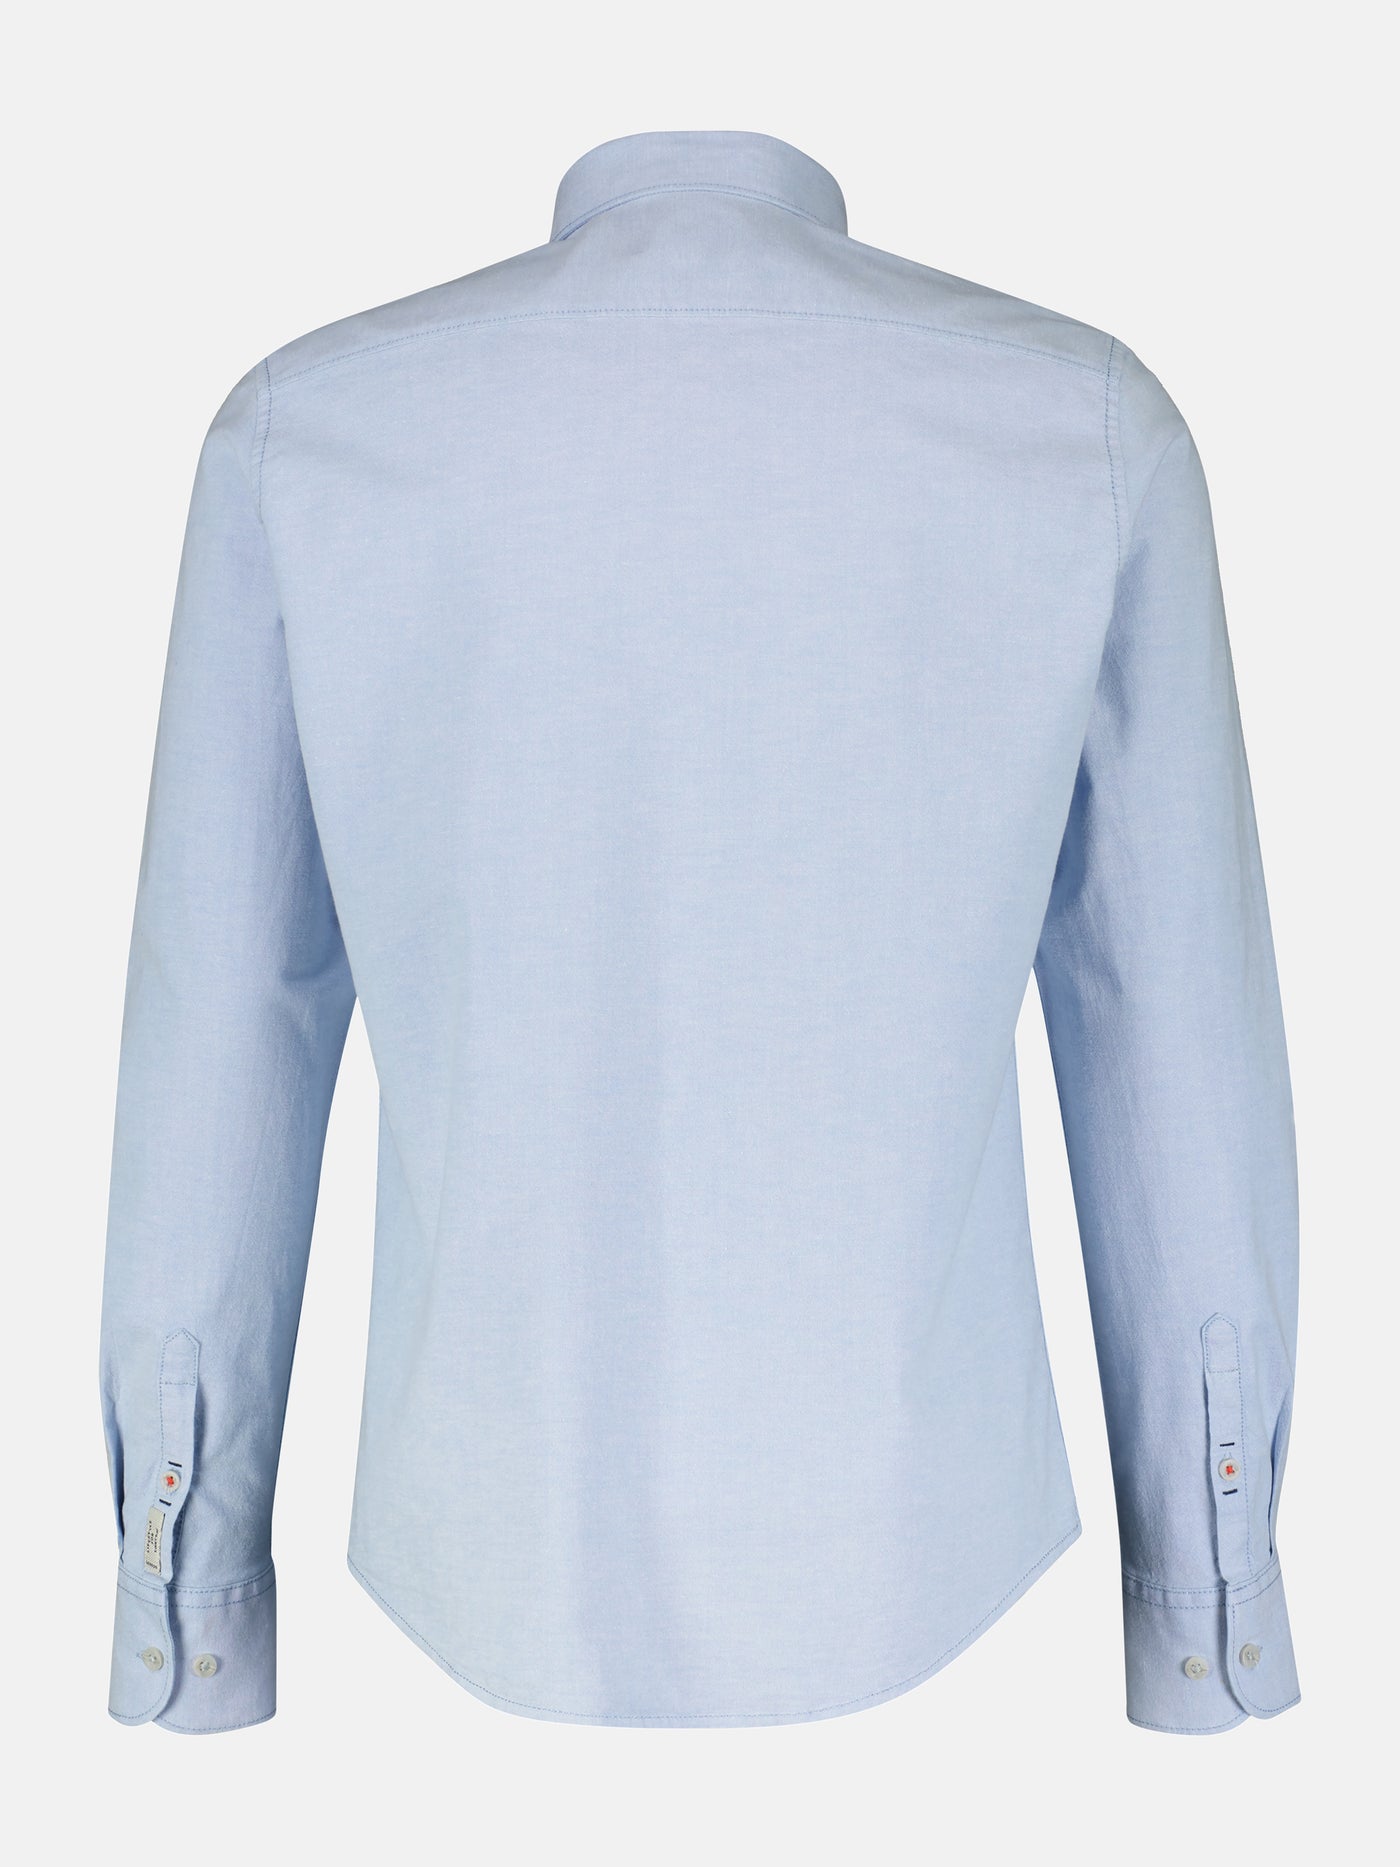 Oxford shirt, plain color